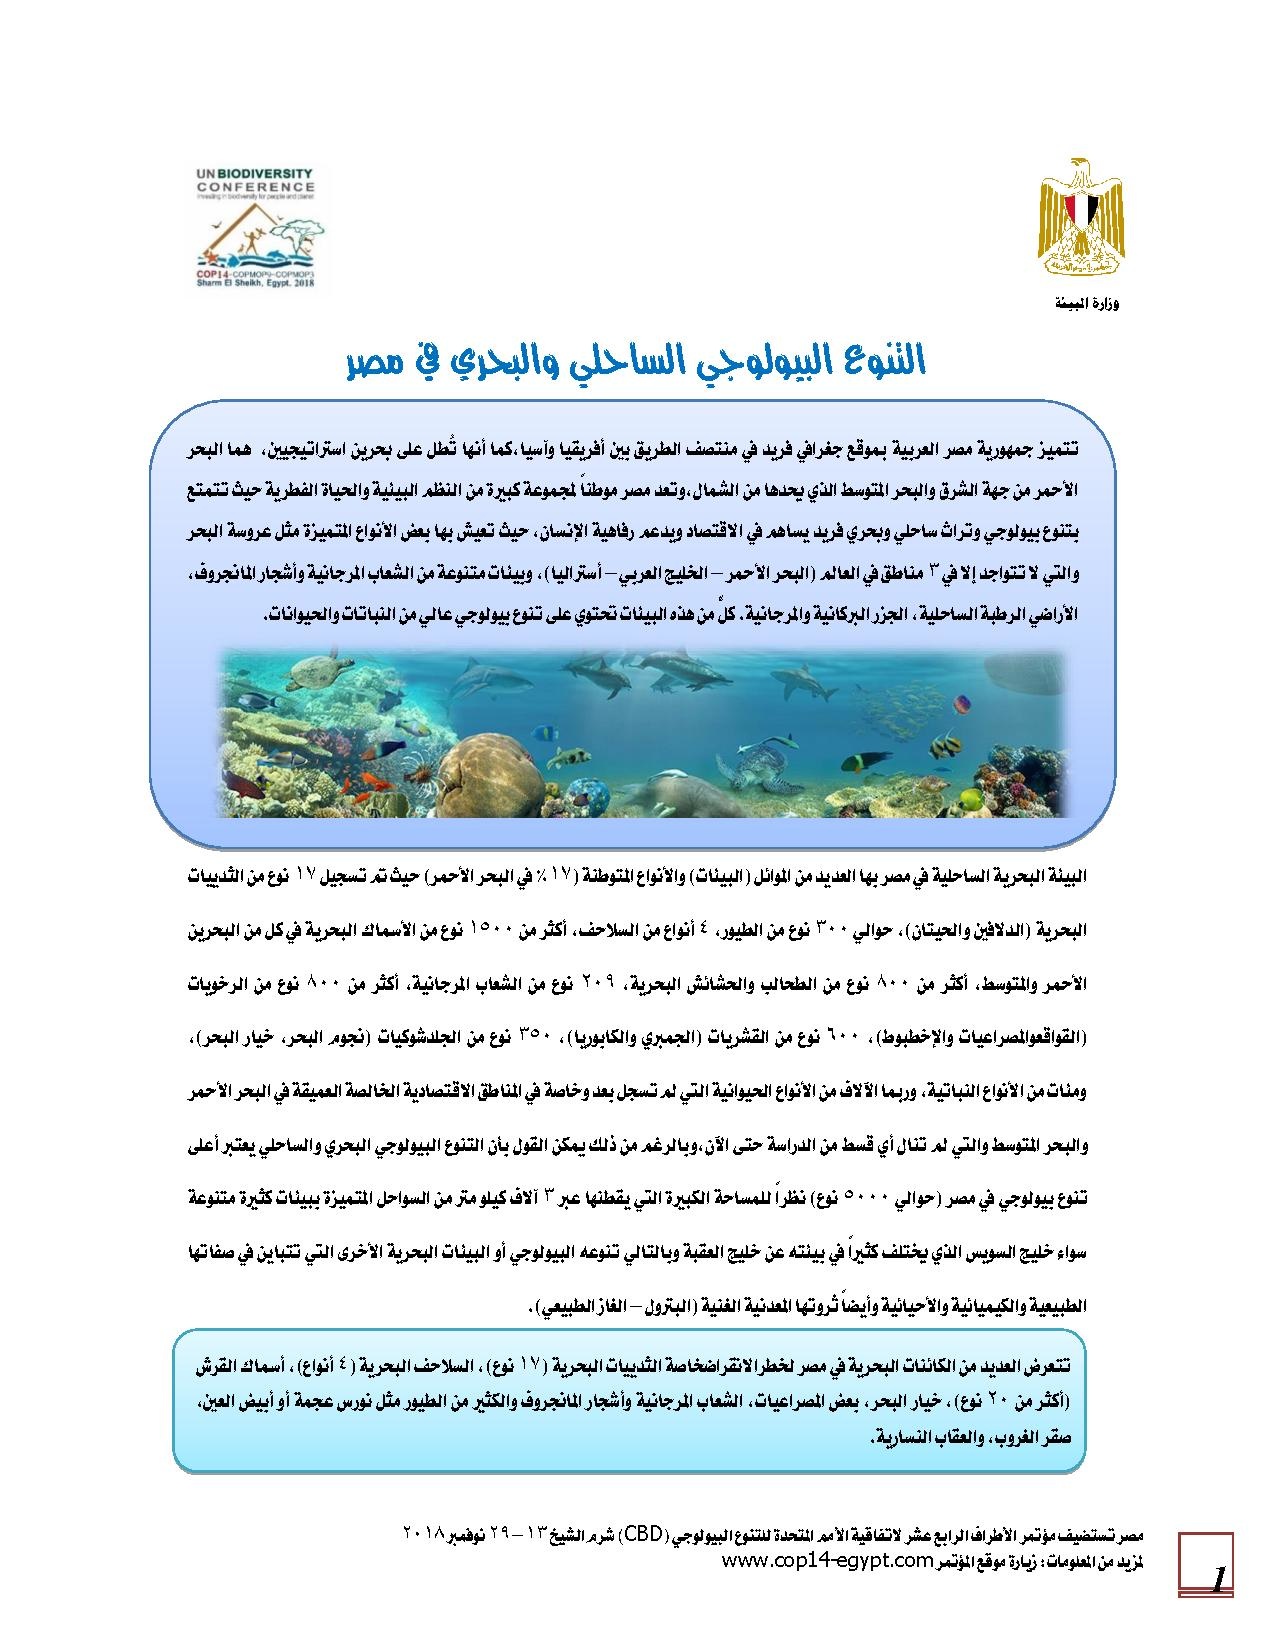 التنوع الحيوي الساحلي والبحري في مصر